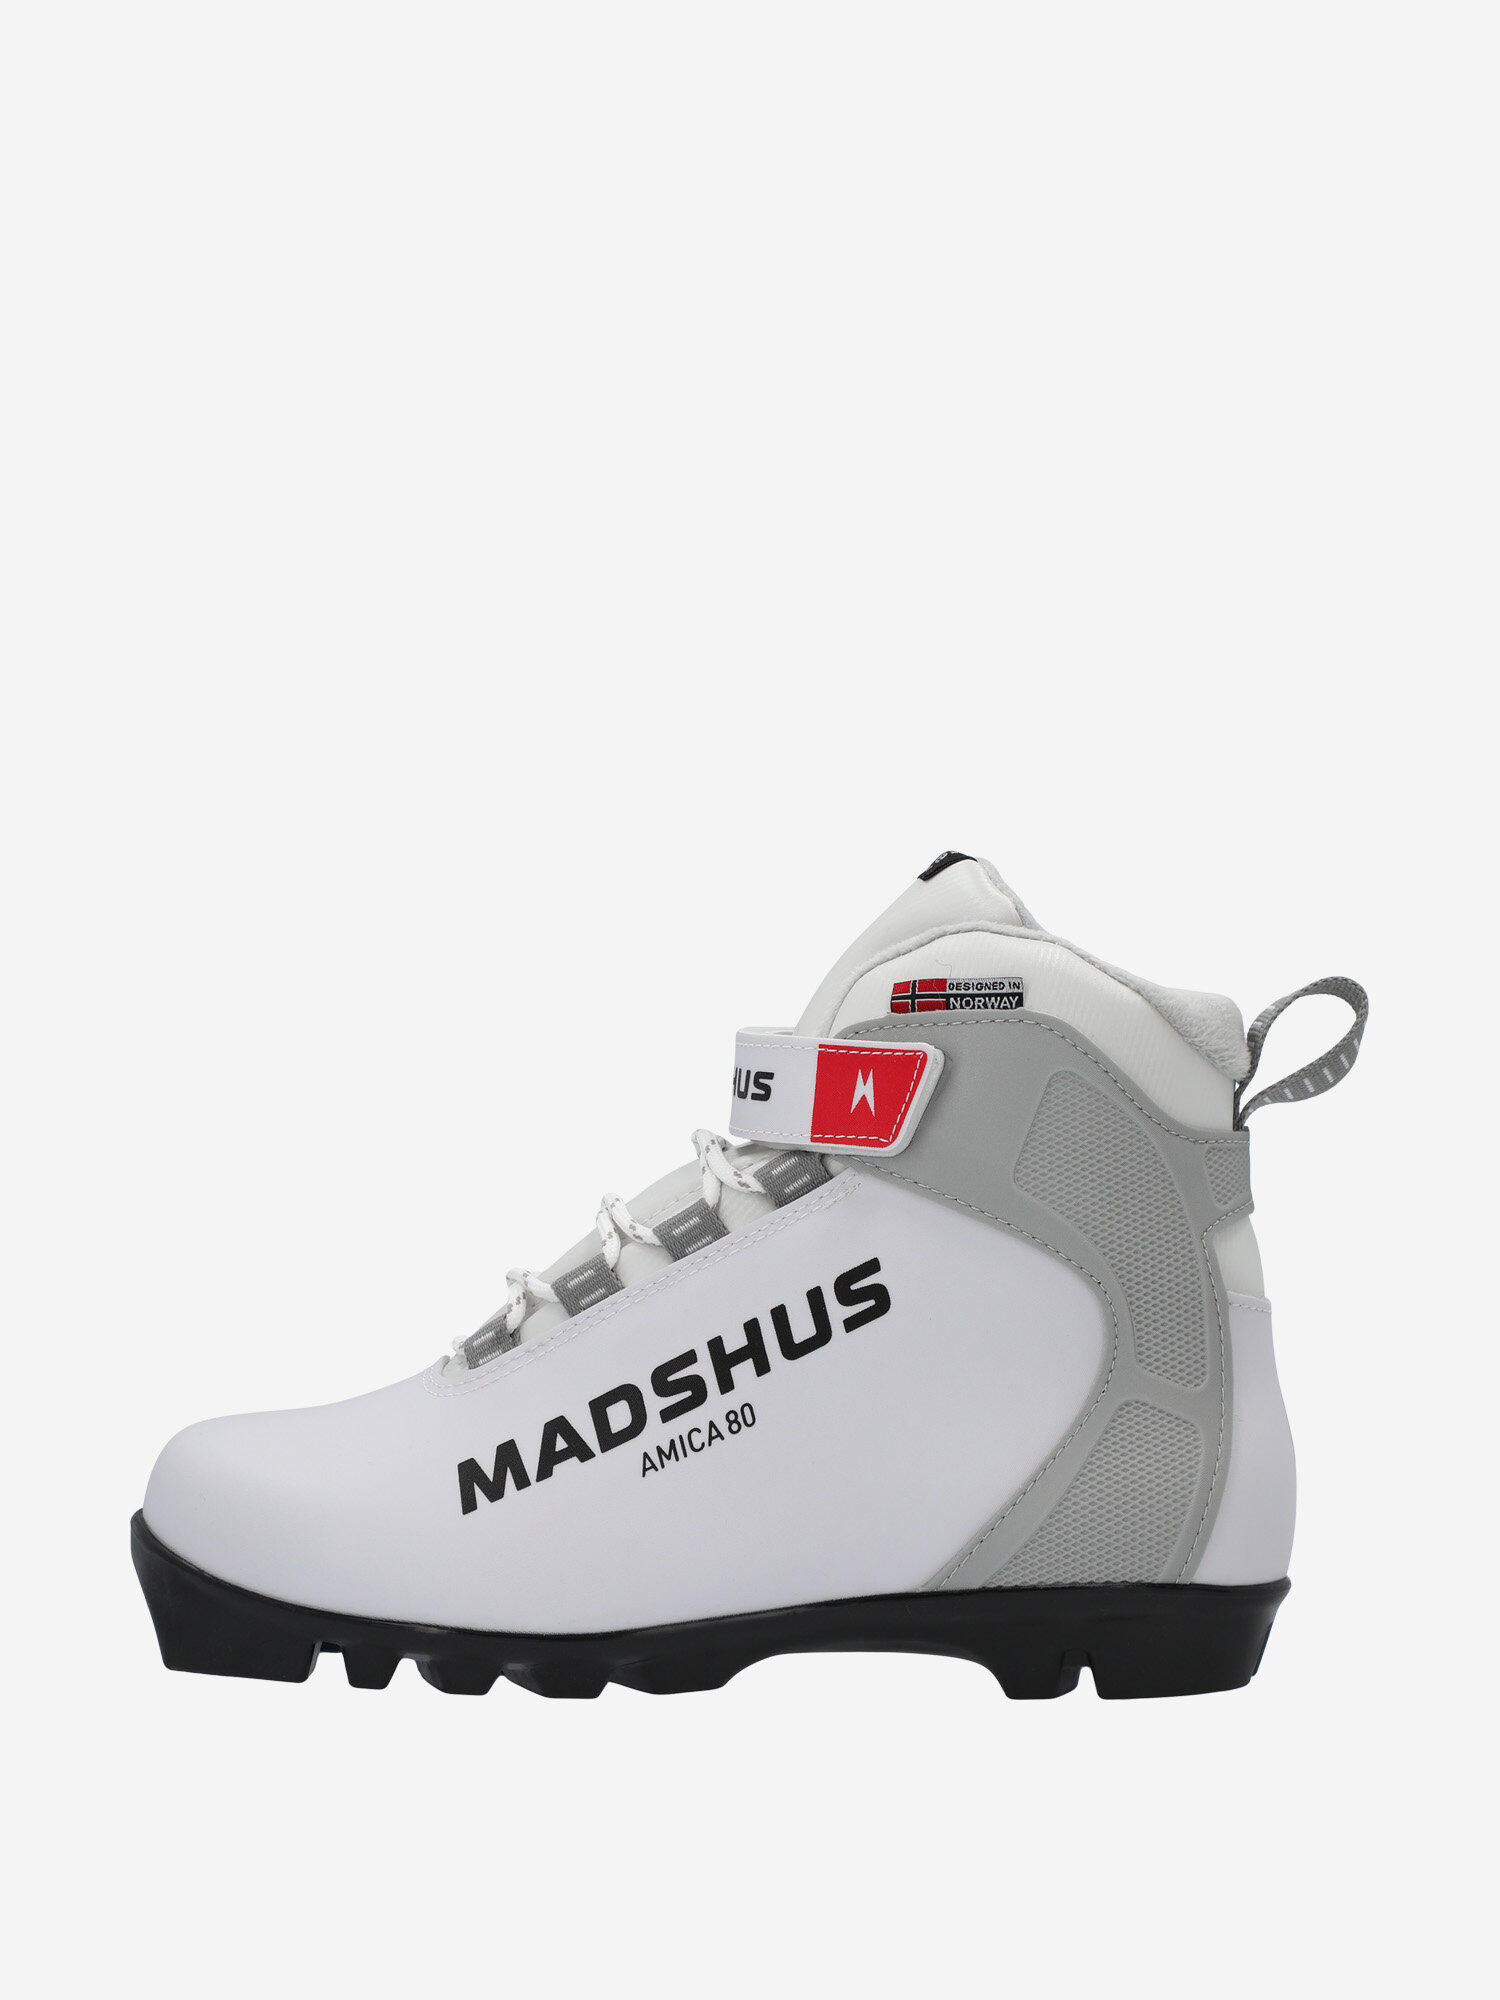 Ботинки для беговых лыж женские Madshus Amica 80 Белый; RUS: 37.5, Ориг: 38